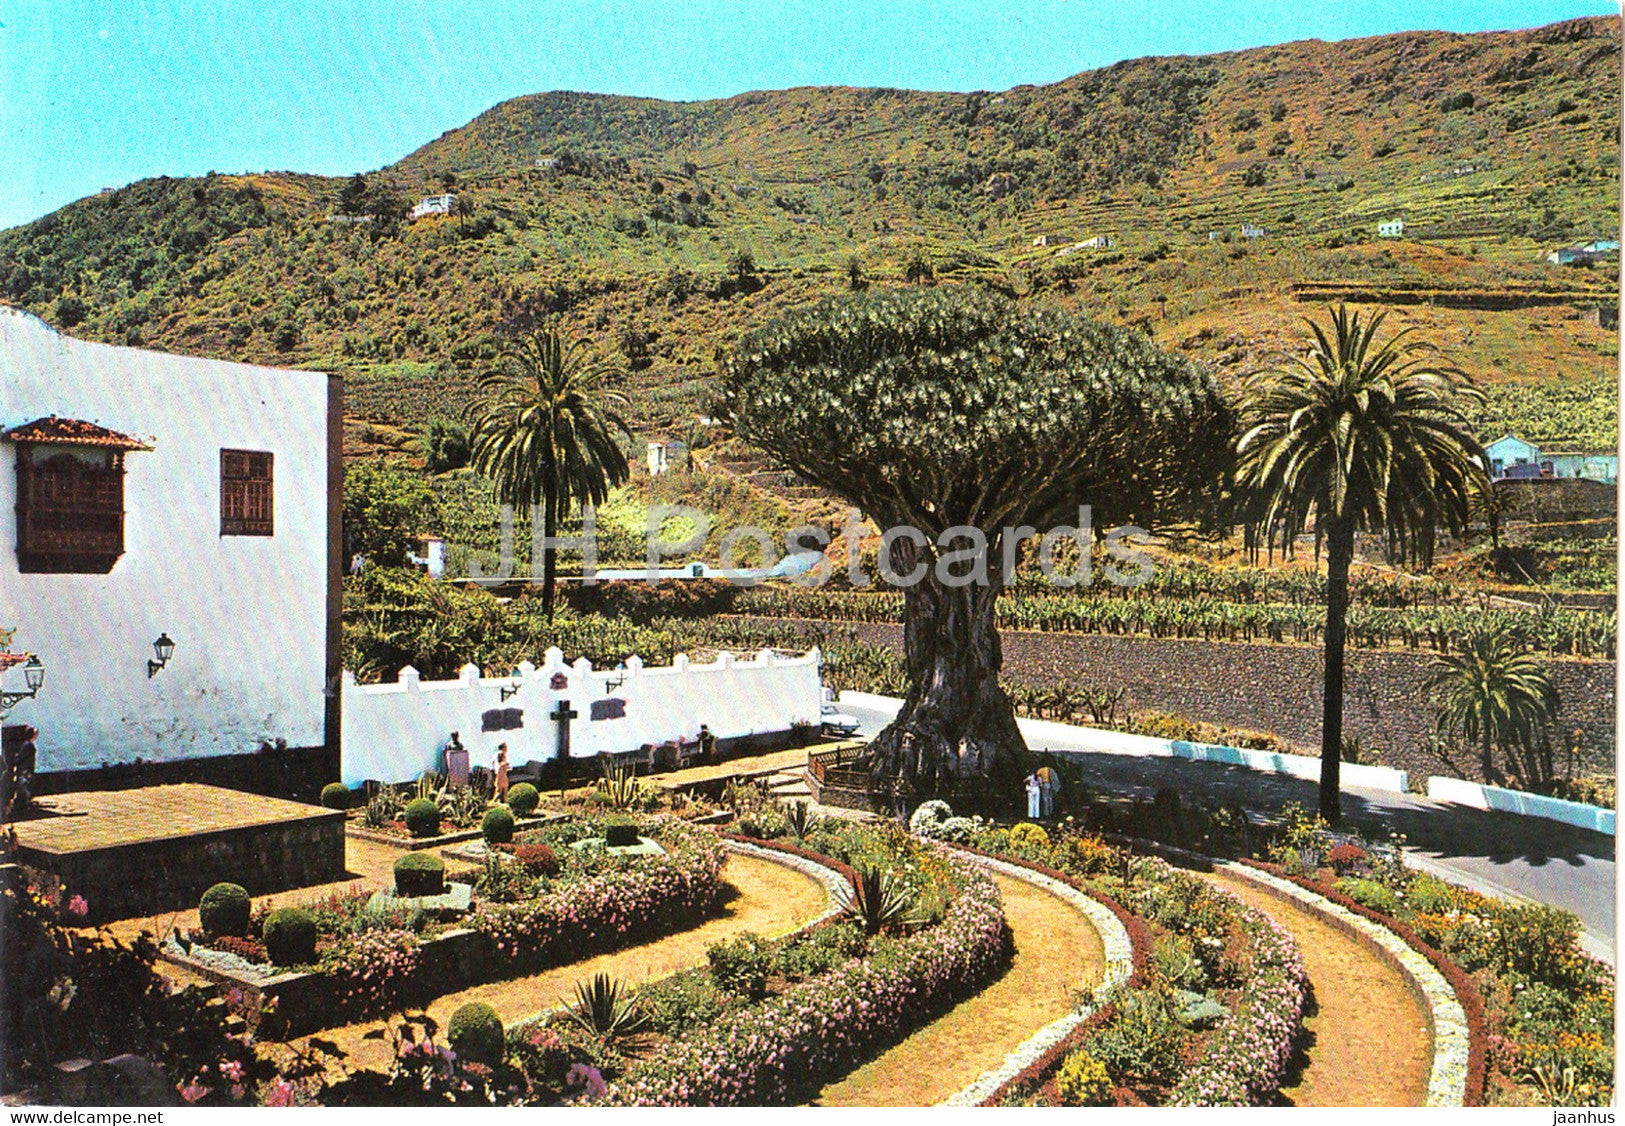 Icod De Los Vinos - Tenerife - El Drago milenario - 2821 - Spain - unused - JH Postcards